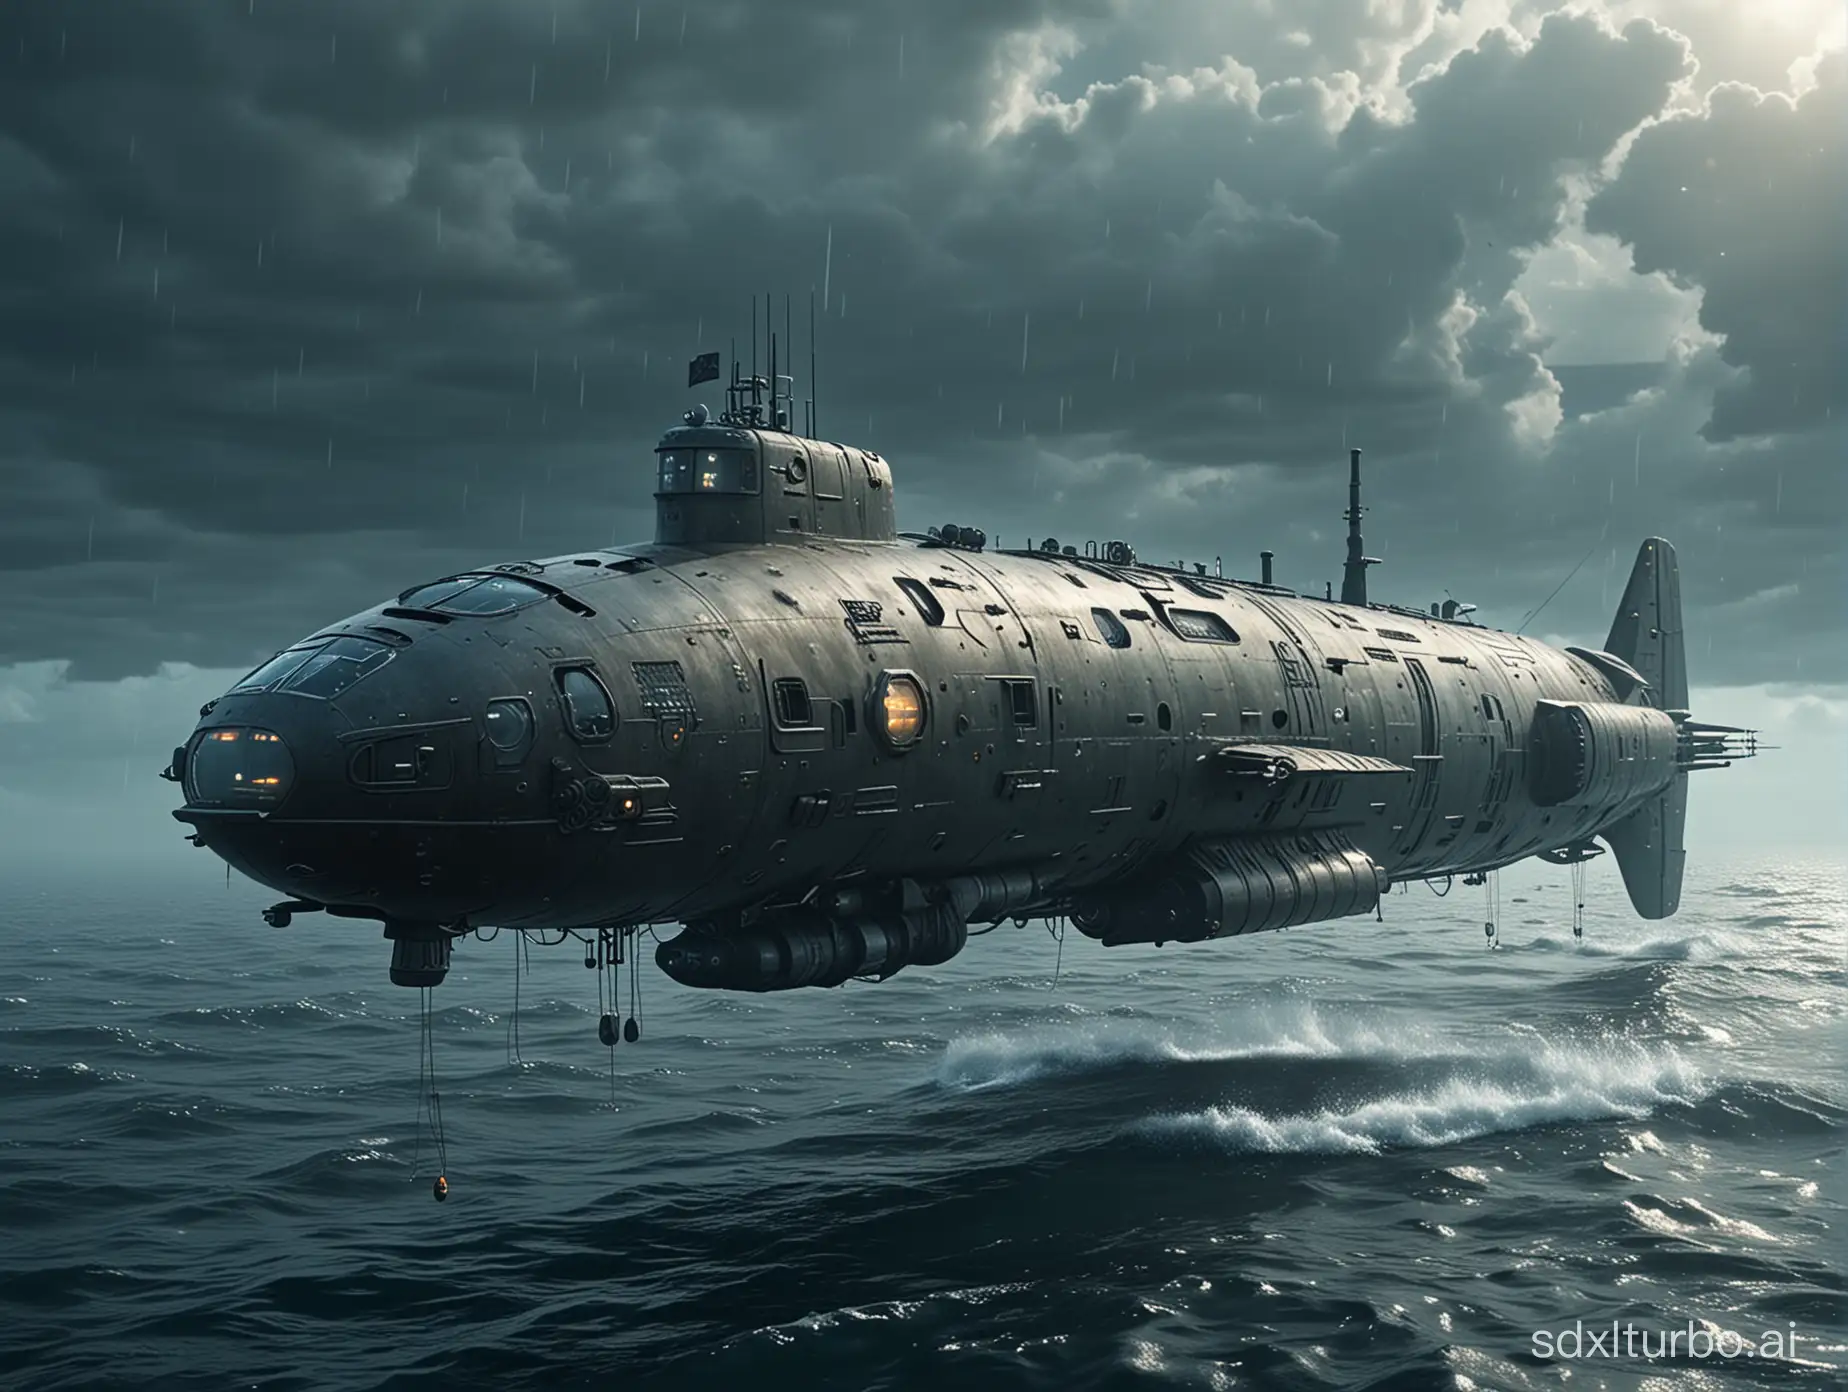 Futuristic-Submarine-Exploration-in-a-SciFi-Setting